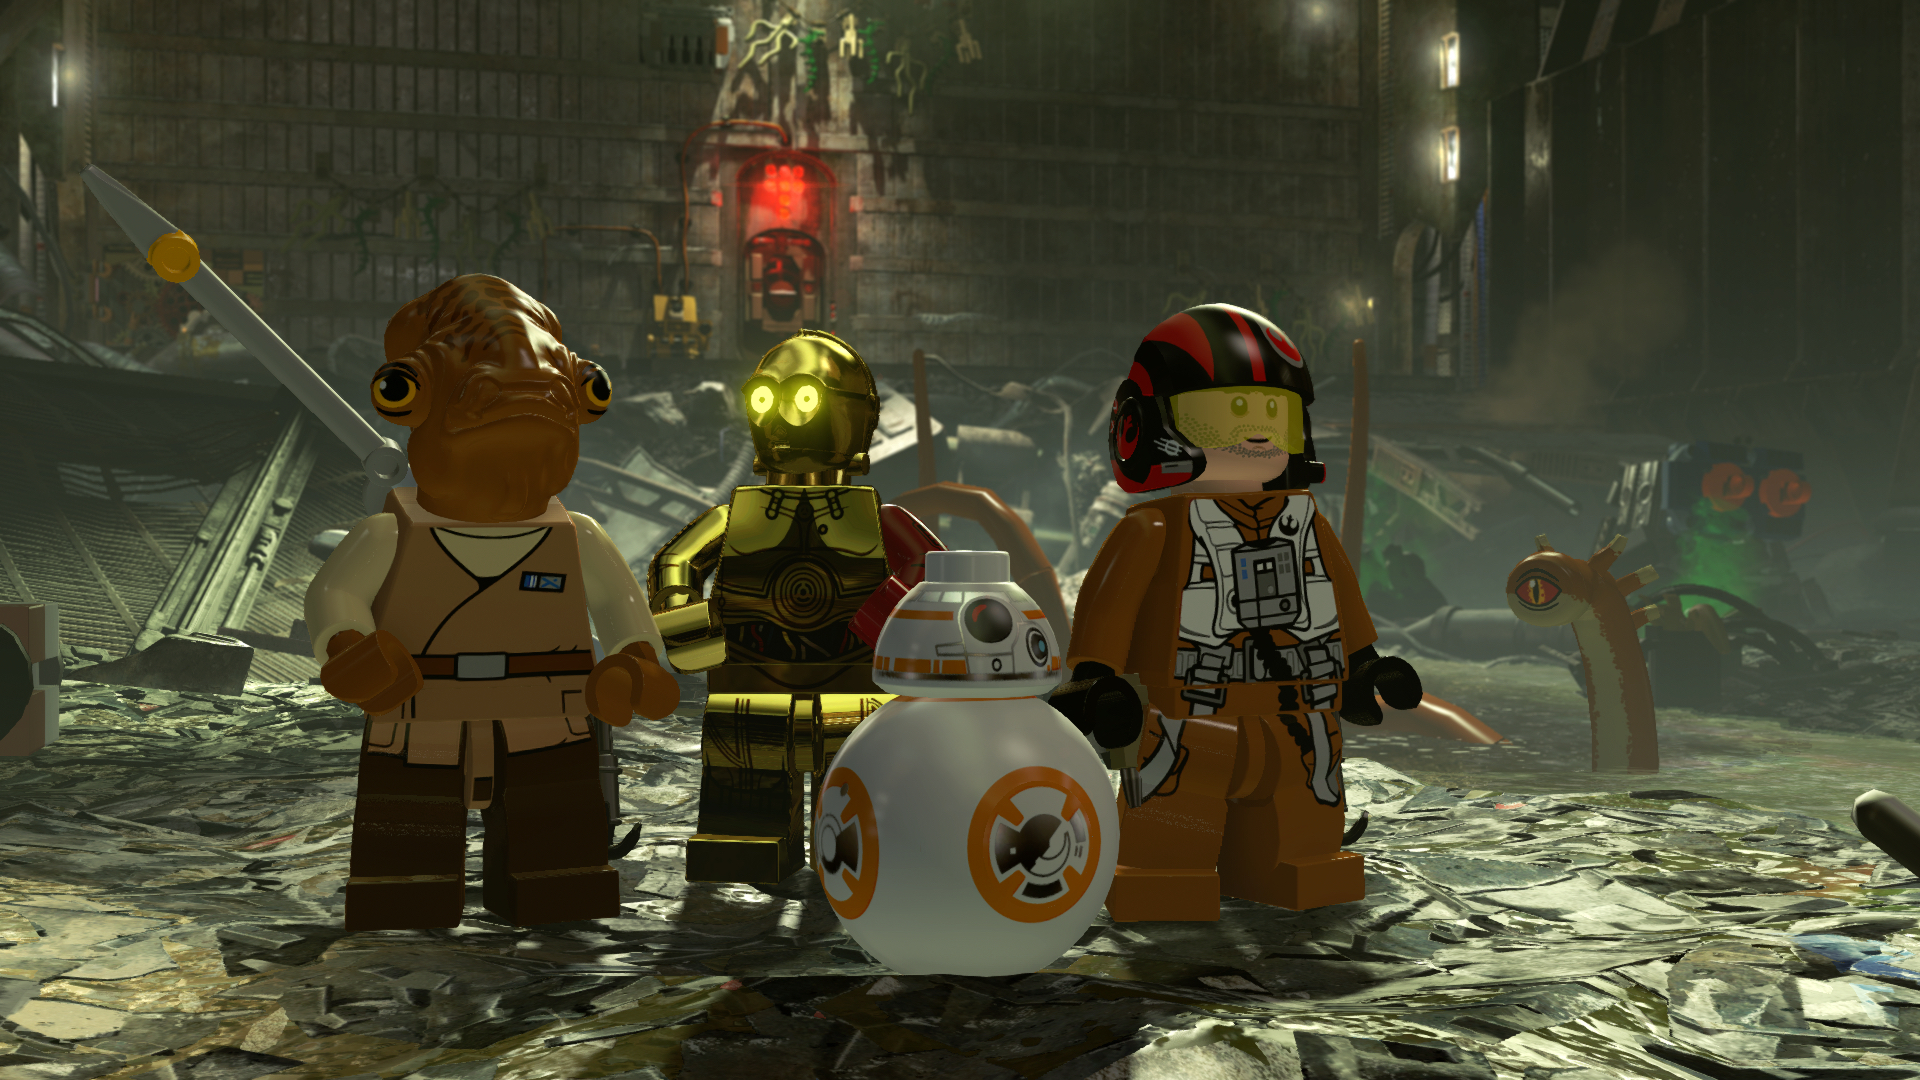 Les environnements sont aussi détaillés que les personnages - LEGO Star Wars The Force Awakens